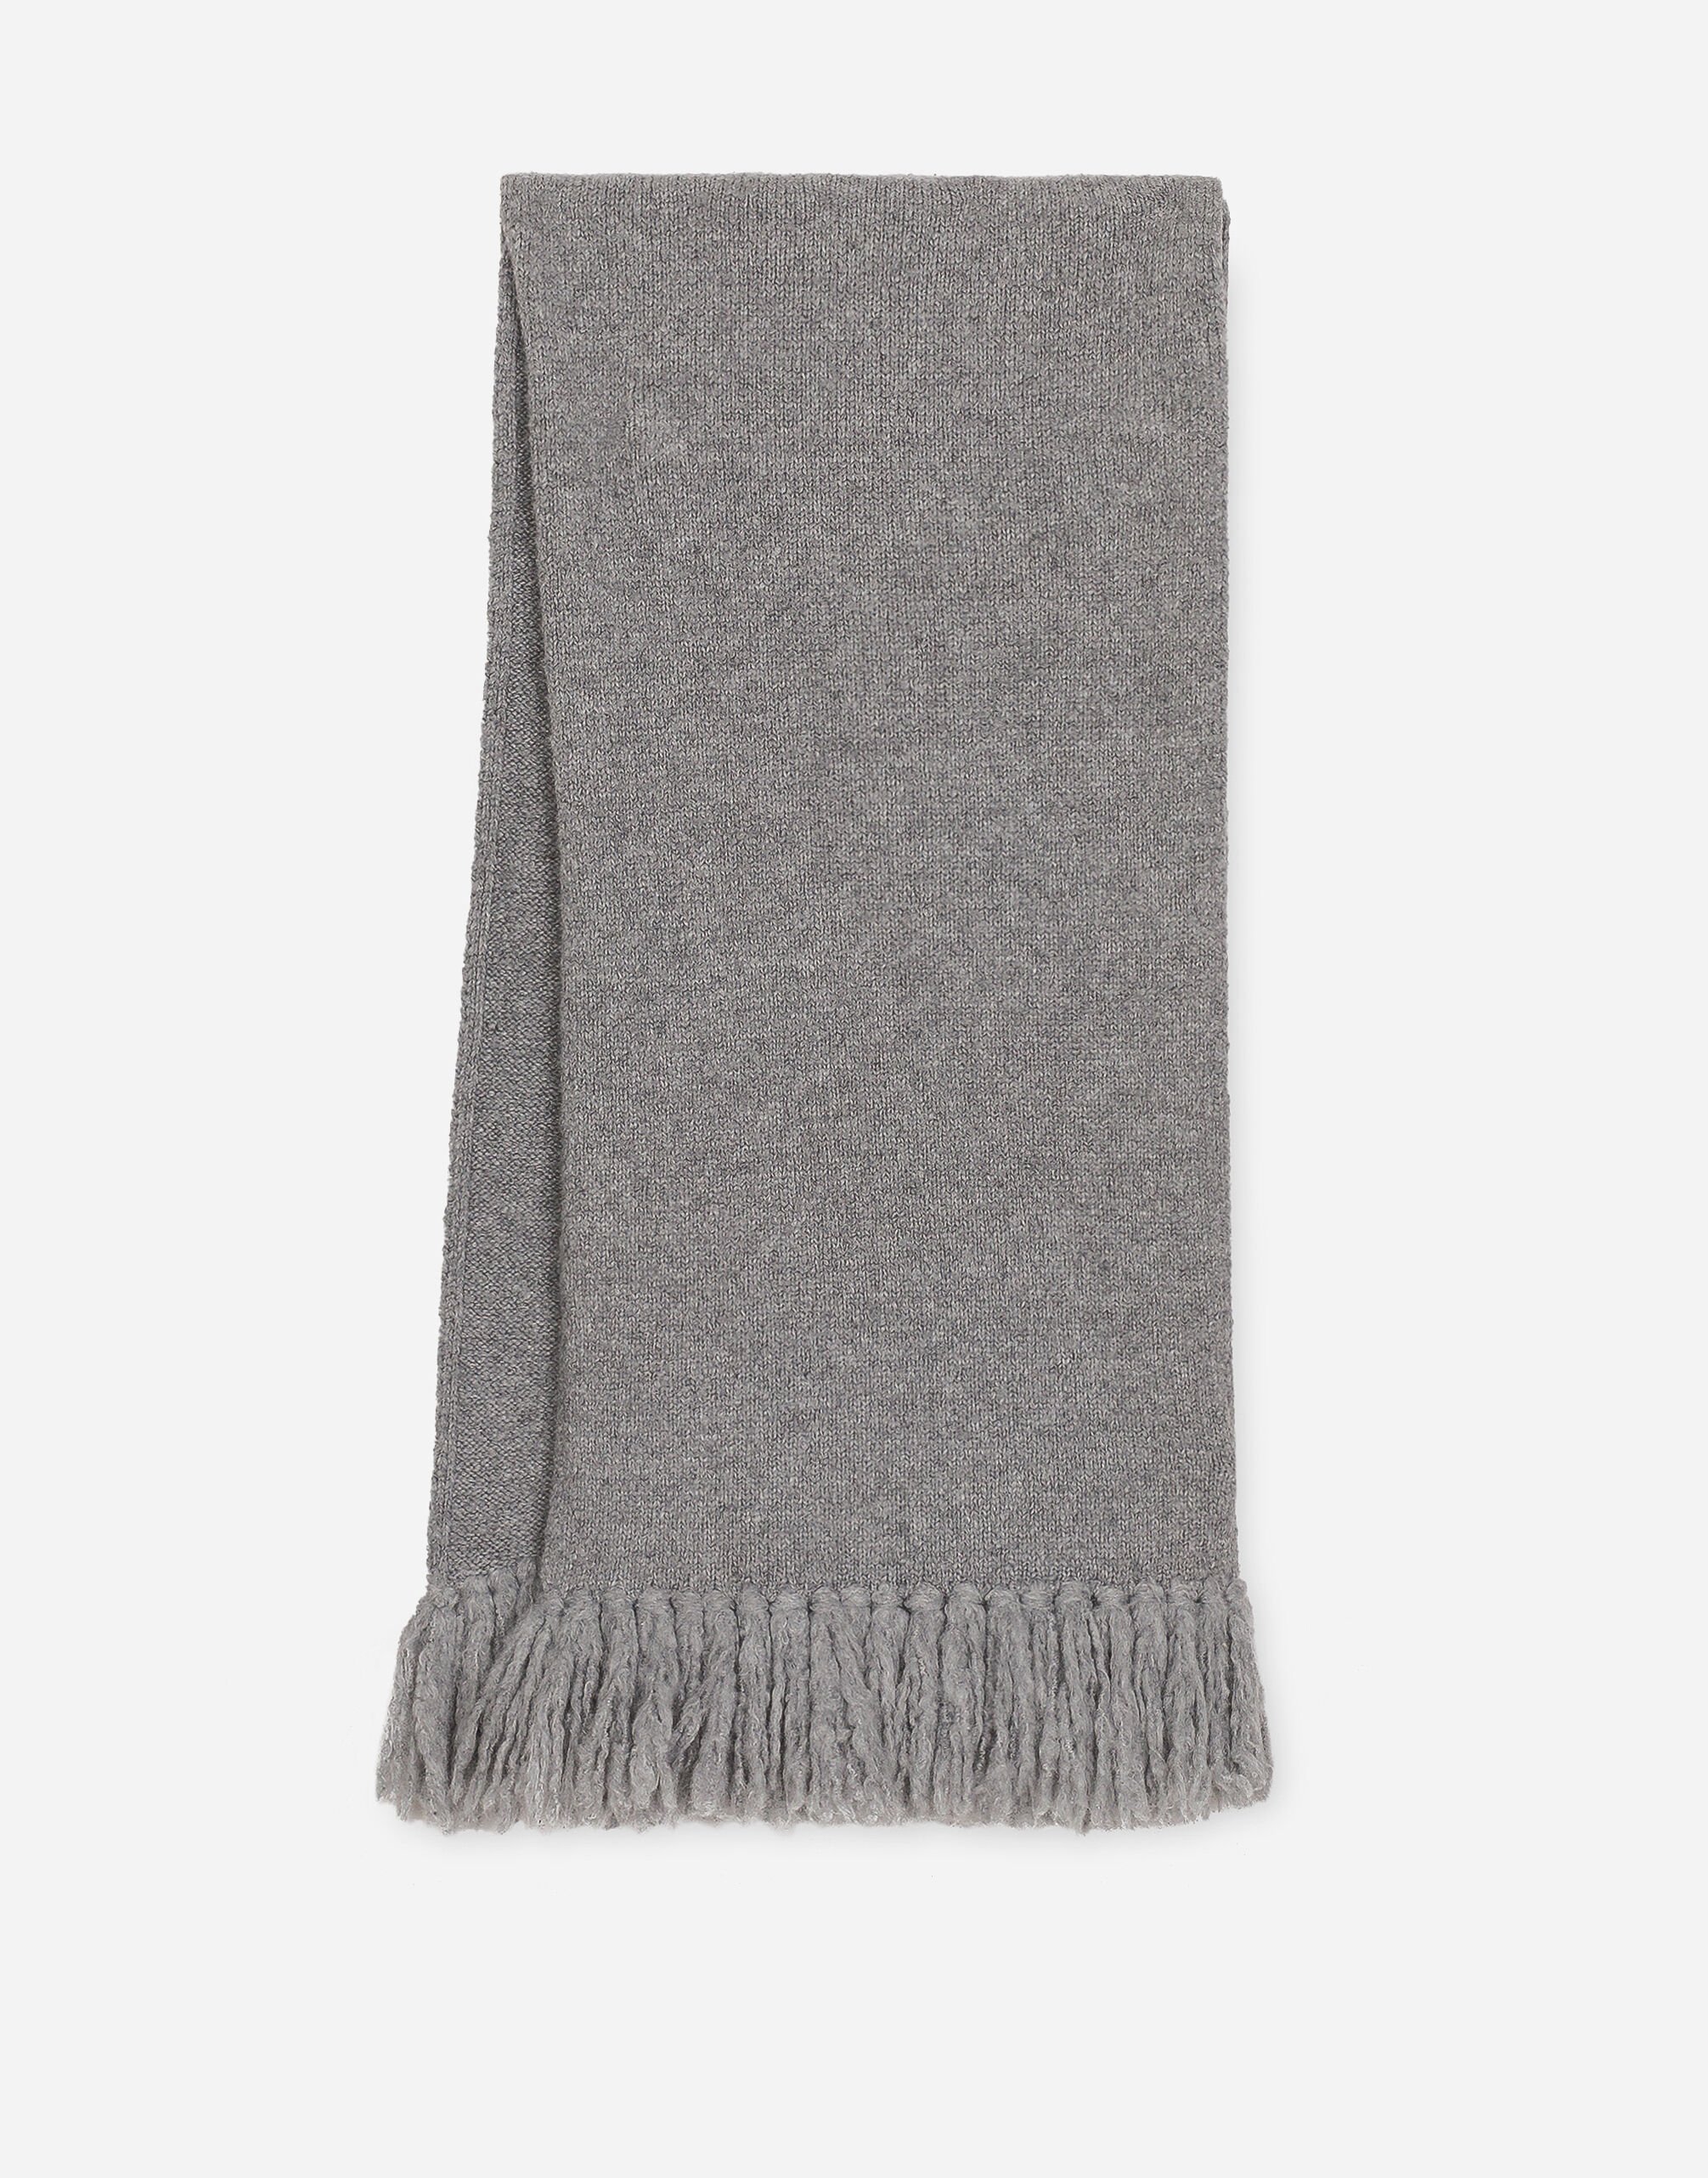 Dolce & Gabbana Stretch technical wool knit scarf Grey FG108AFLRDA